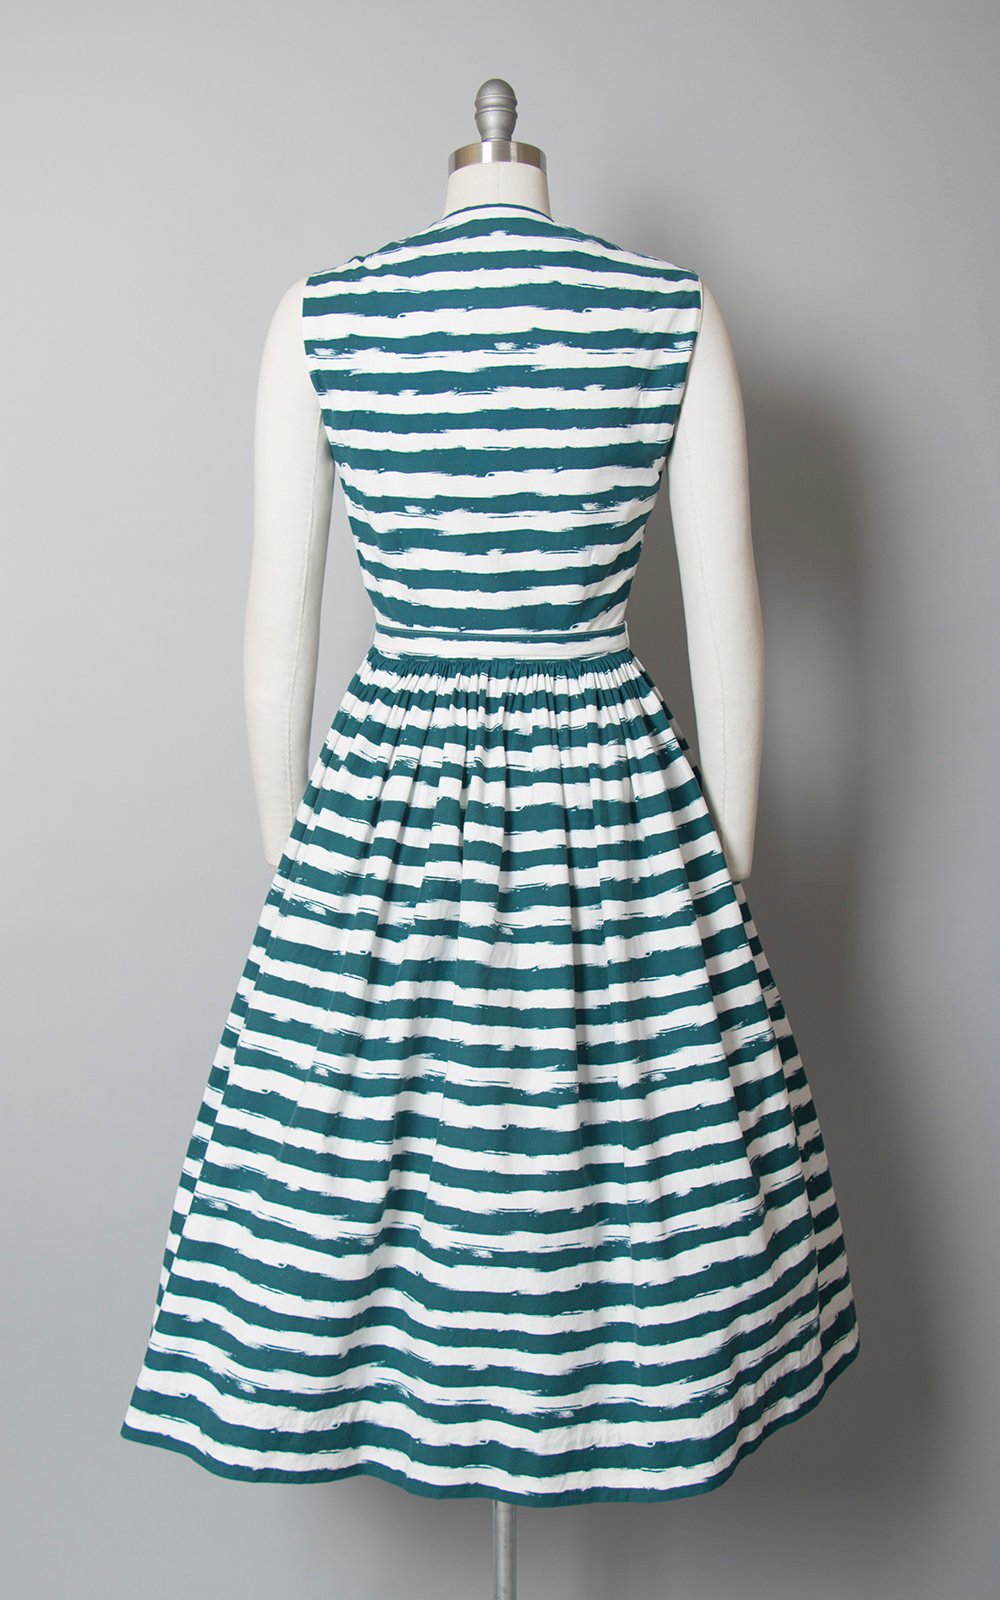 Vintage 1950s Dress | 50s HORROCKSES Striped Cotton Sundress Teal White Full Skirt Shirtwaist Day Dress (small)